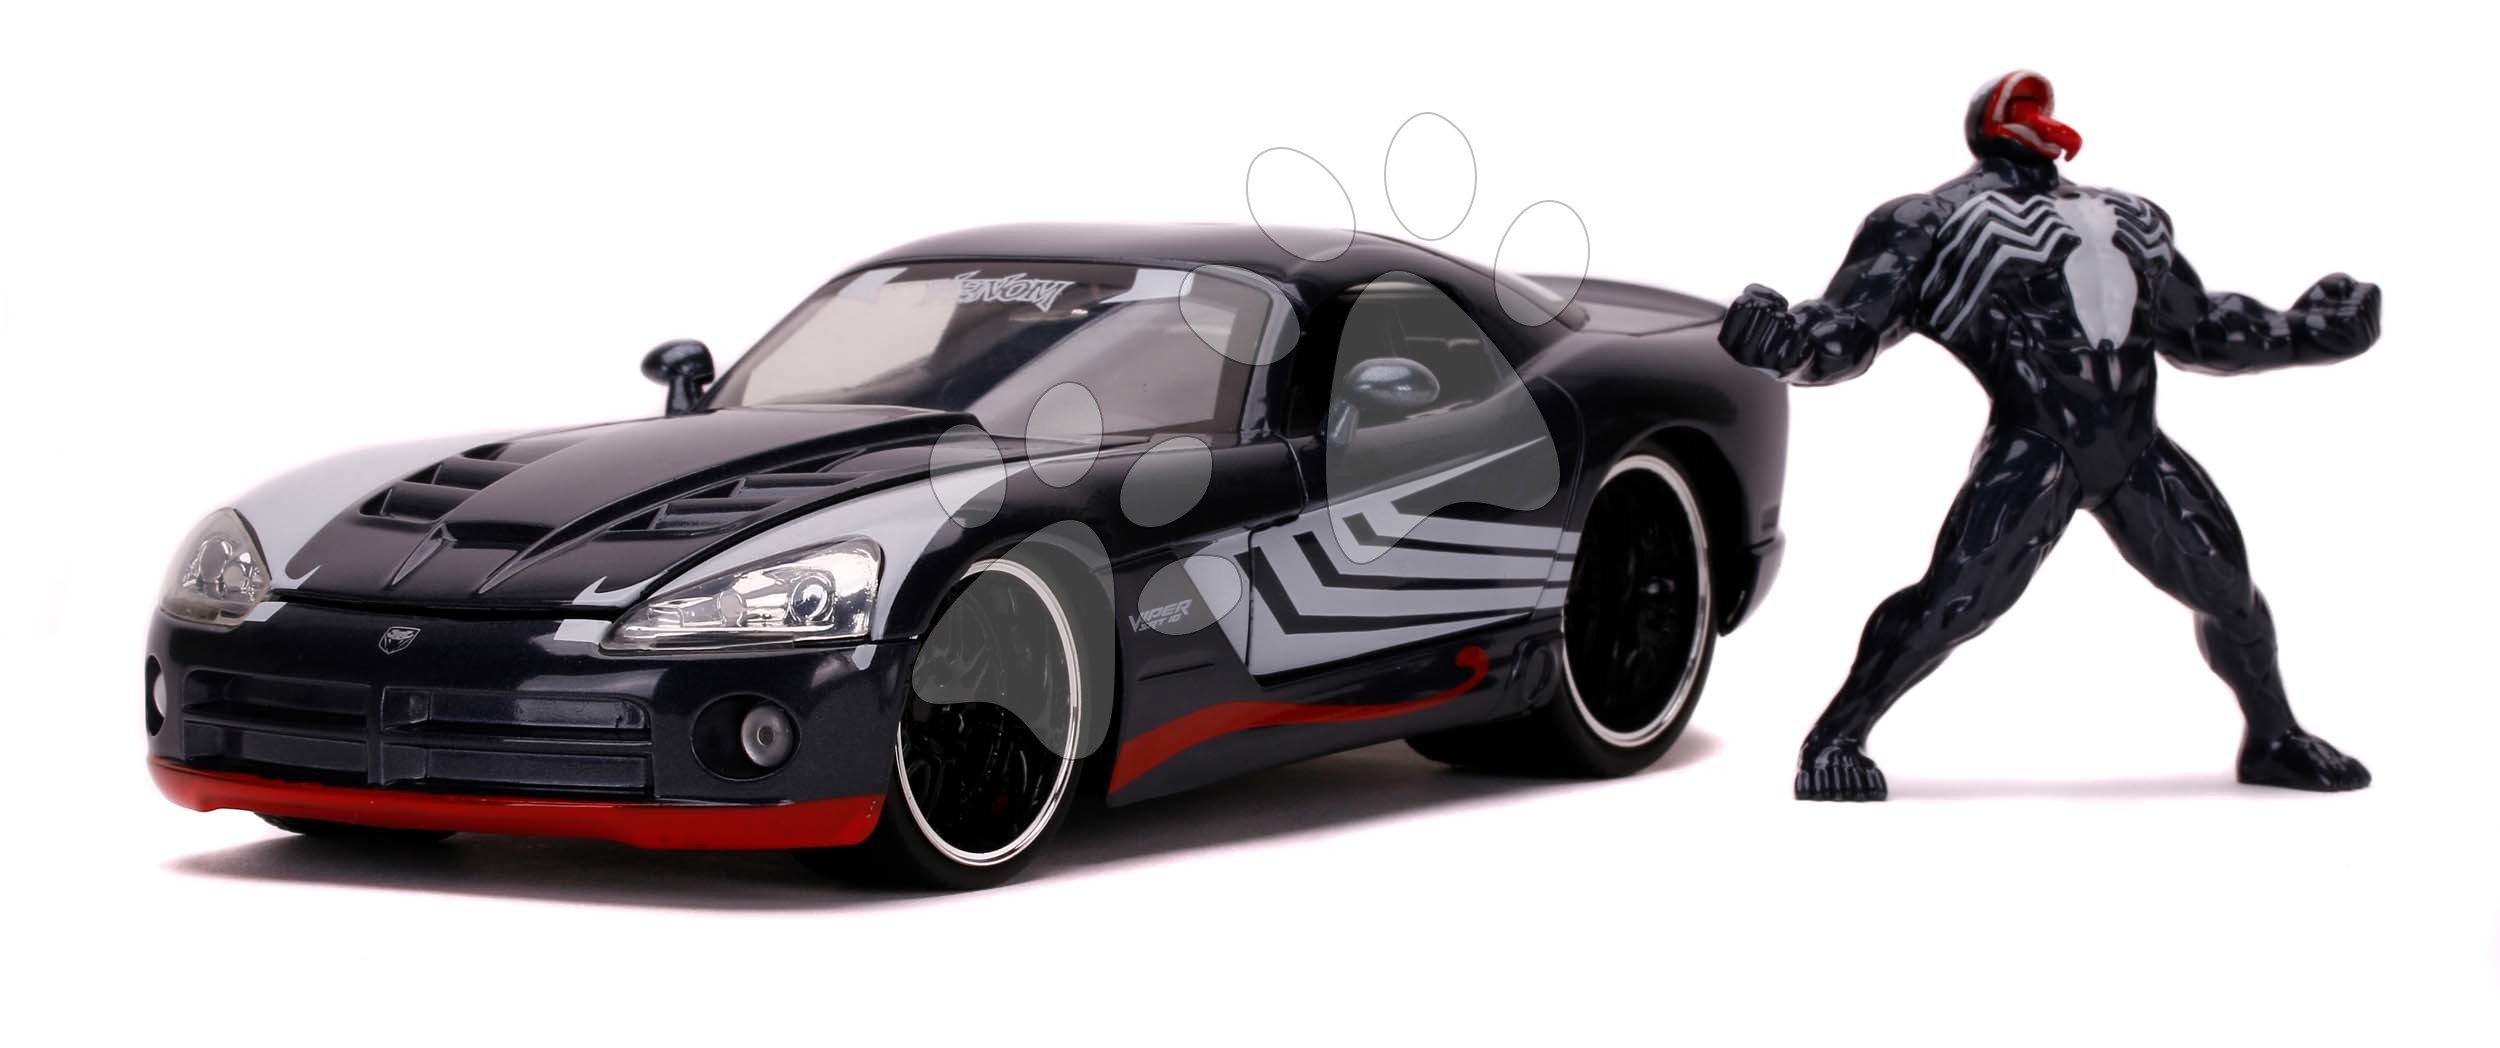 Autíčko Dodge Viper SRT10 Marvel Jada kovové s otevíratelnými částmi a figurka Venom délka 19 cm 1:24